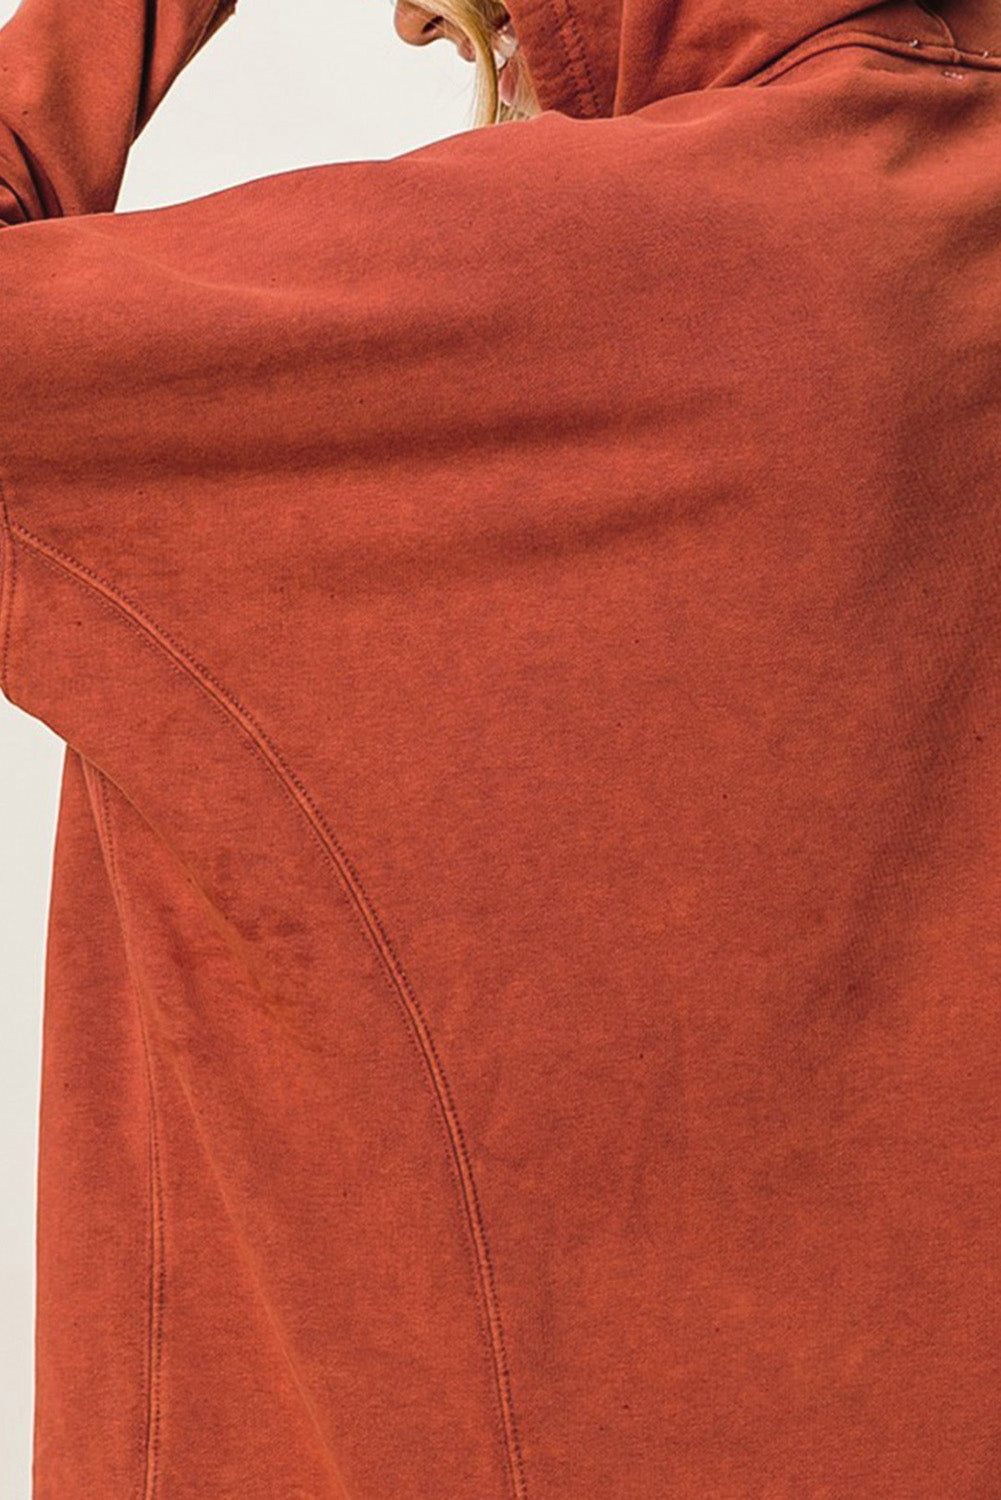 Narančasta velika majica s kapuljačom s rupama za kopčanje